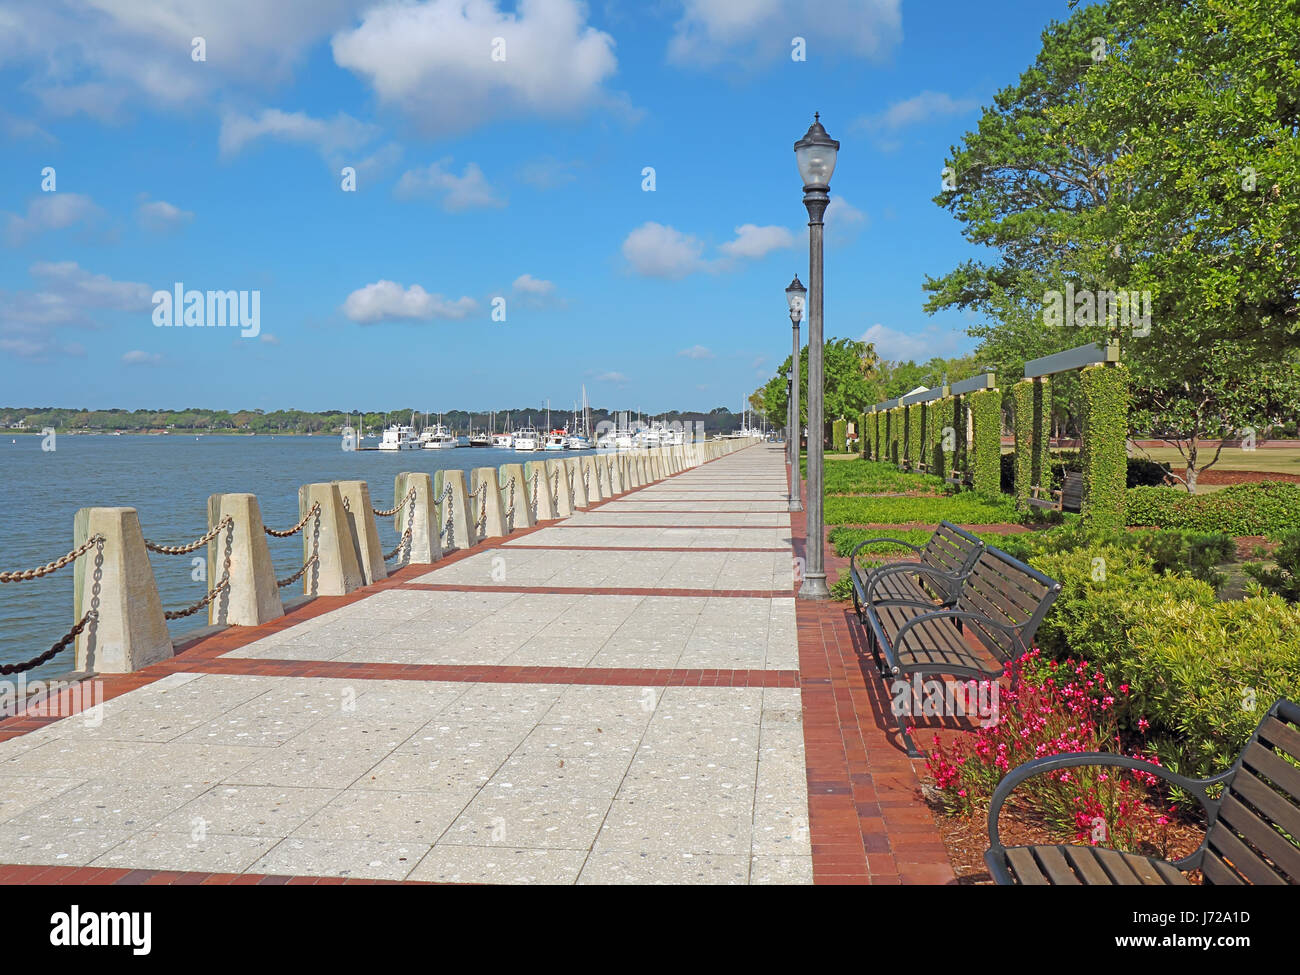 Paseo de Henry C. Salas Waterfront Park, situado al sur de Bay Street en el distrito histórico del centro de la ciudad de Beaufort, Carolina del Sur Foto de stock